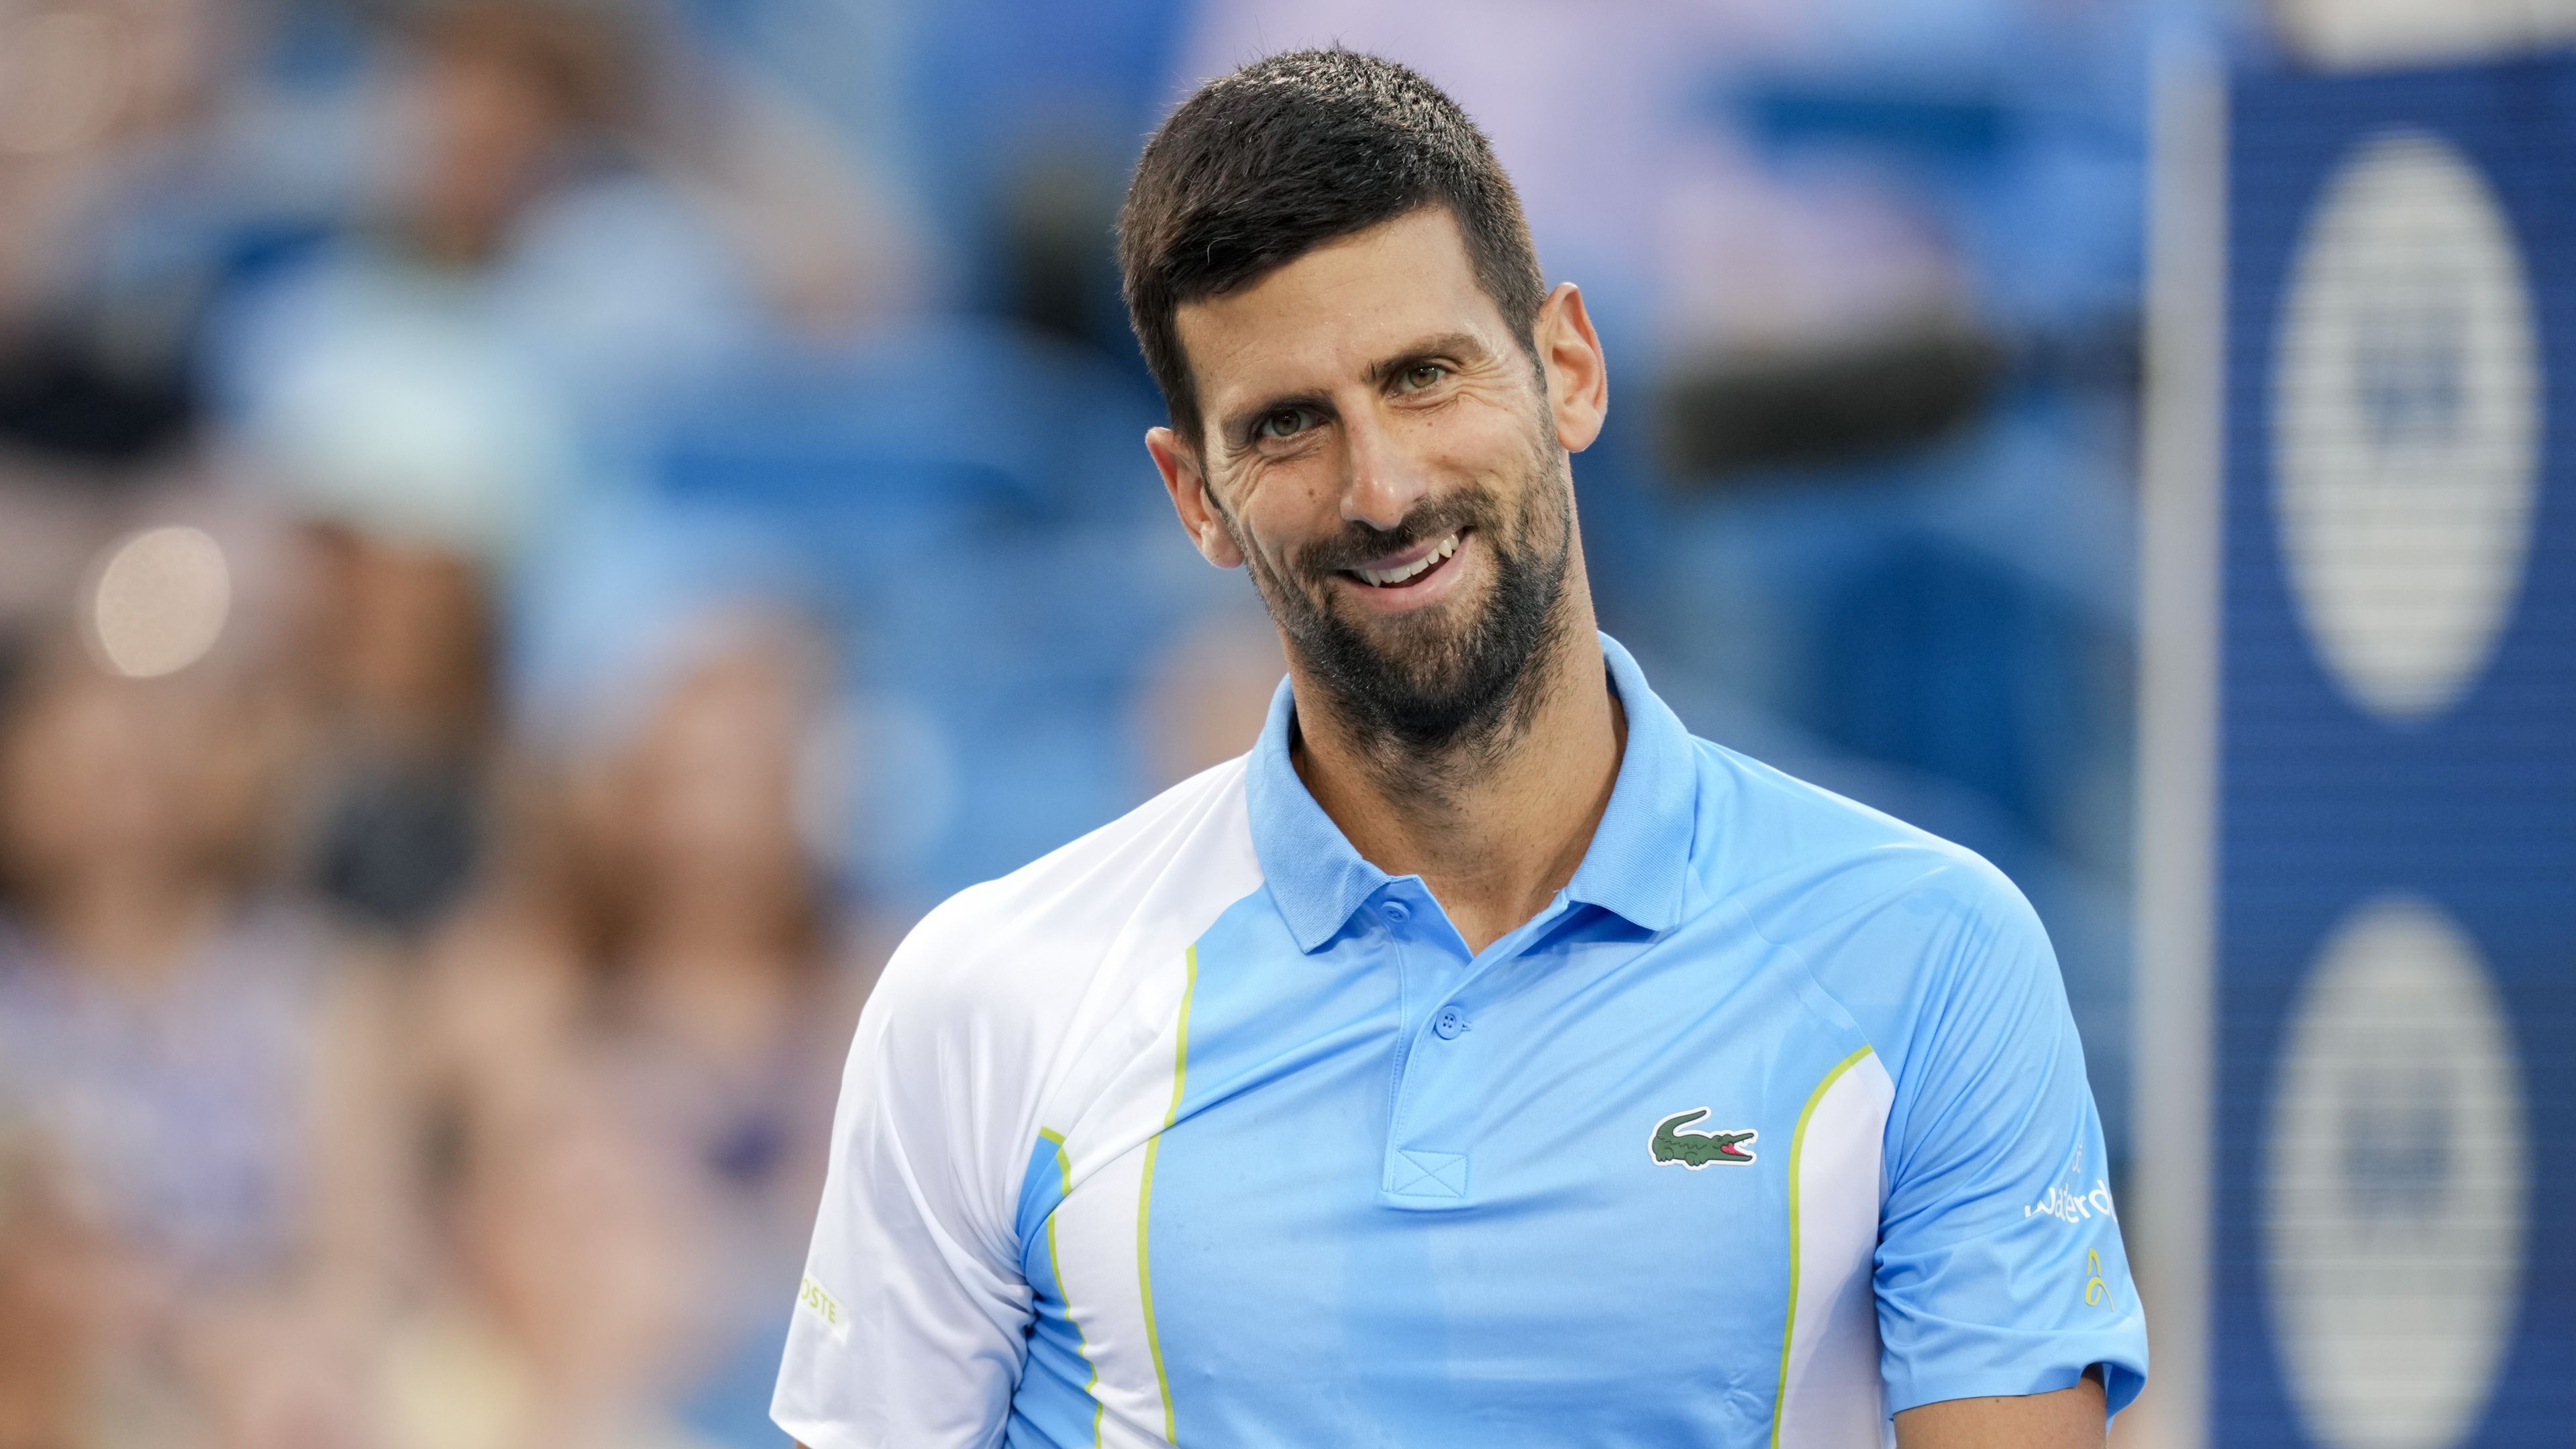 Djokovics a koronavírusos balhéja után egyszettes győzelemmel tért vissza Amerikába